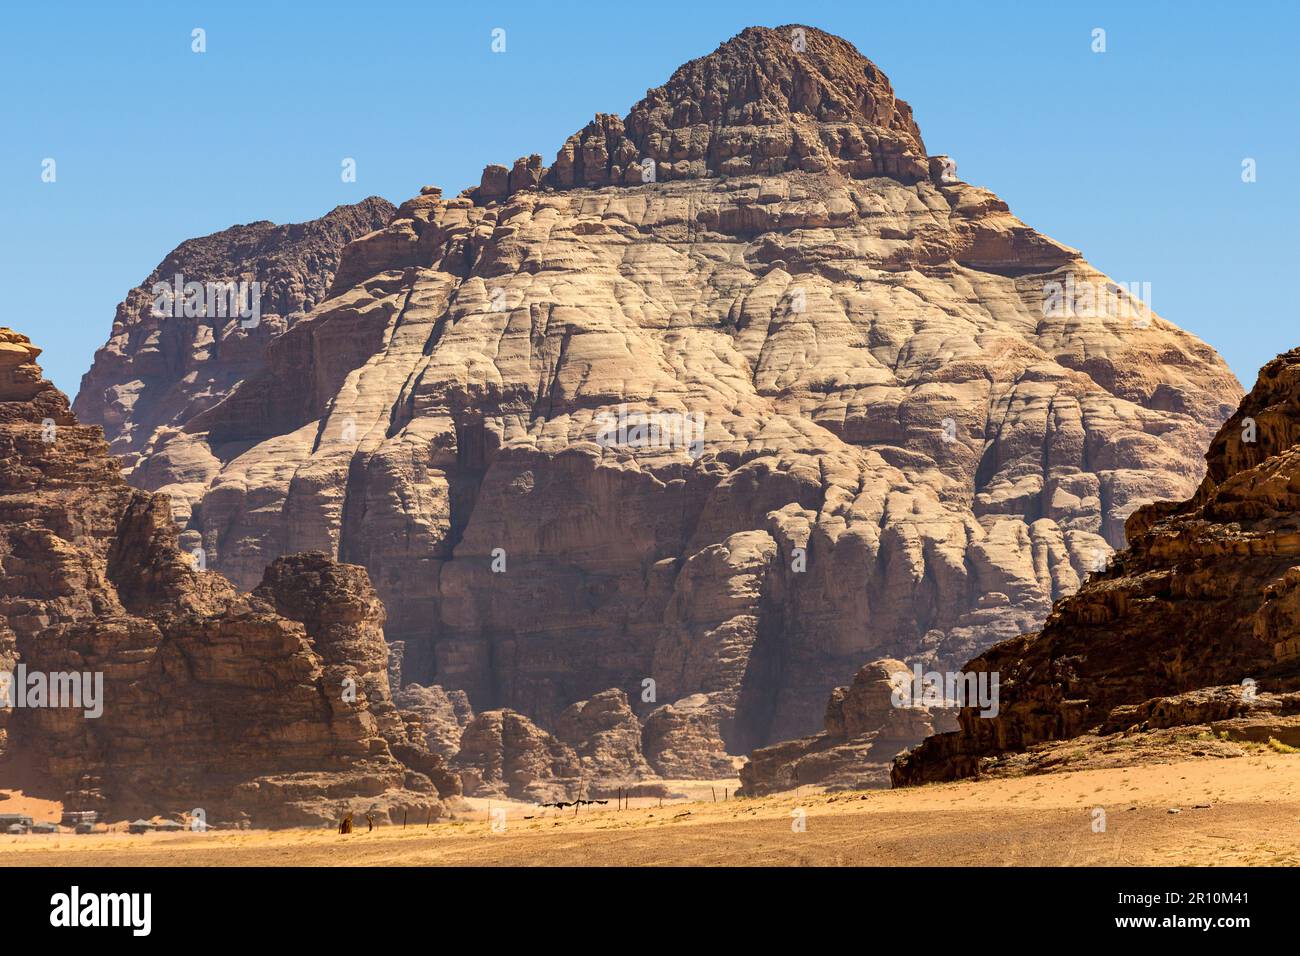 Massicce formazioni rocciose, Wadi Rum, Jordan Foto Stock